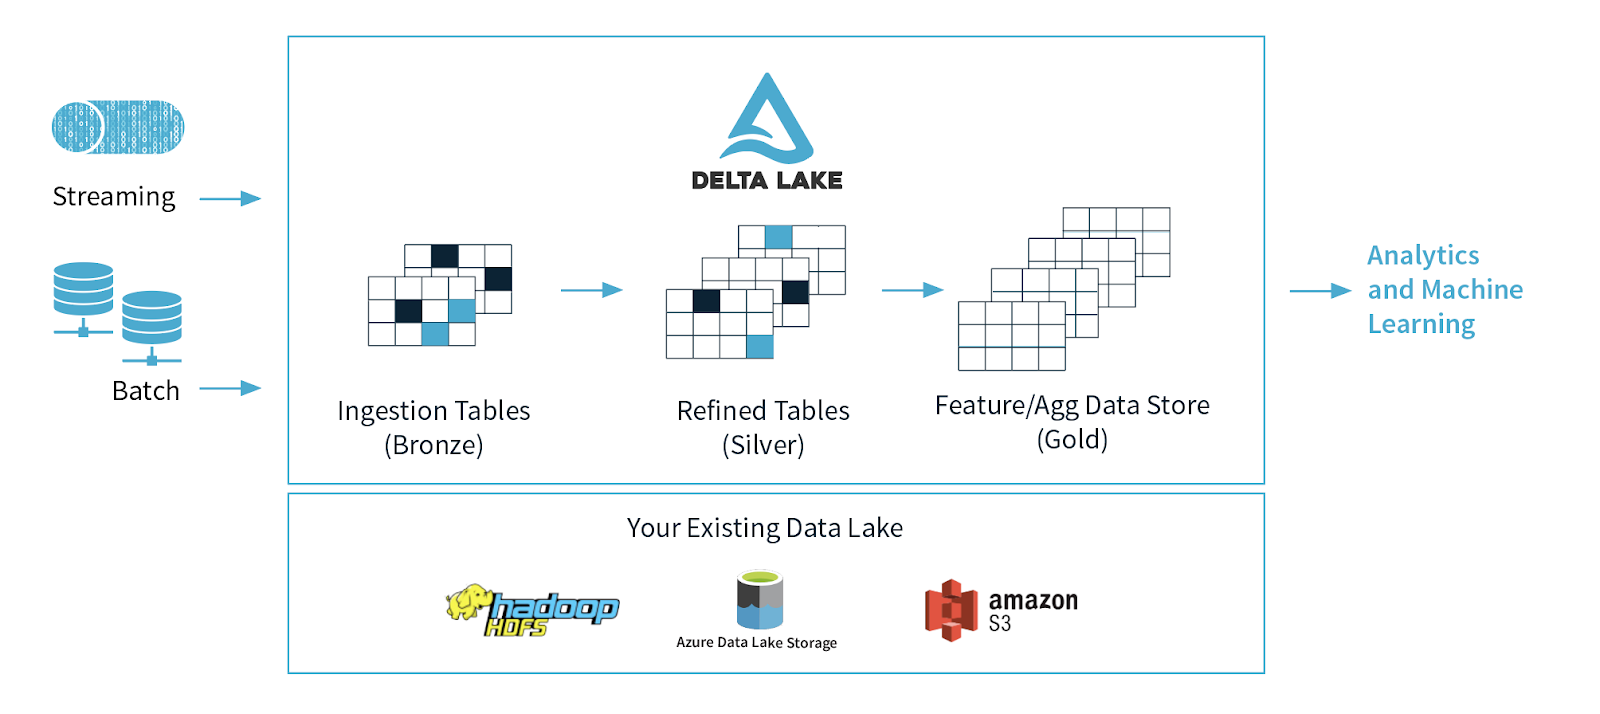 Productionizing Machine Learning With Delta Lake